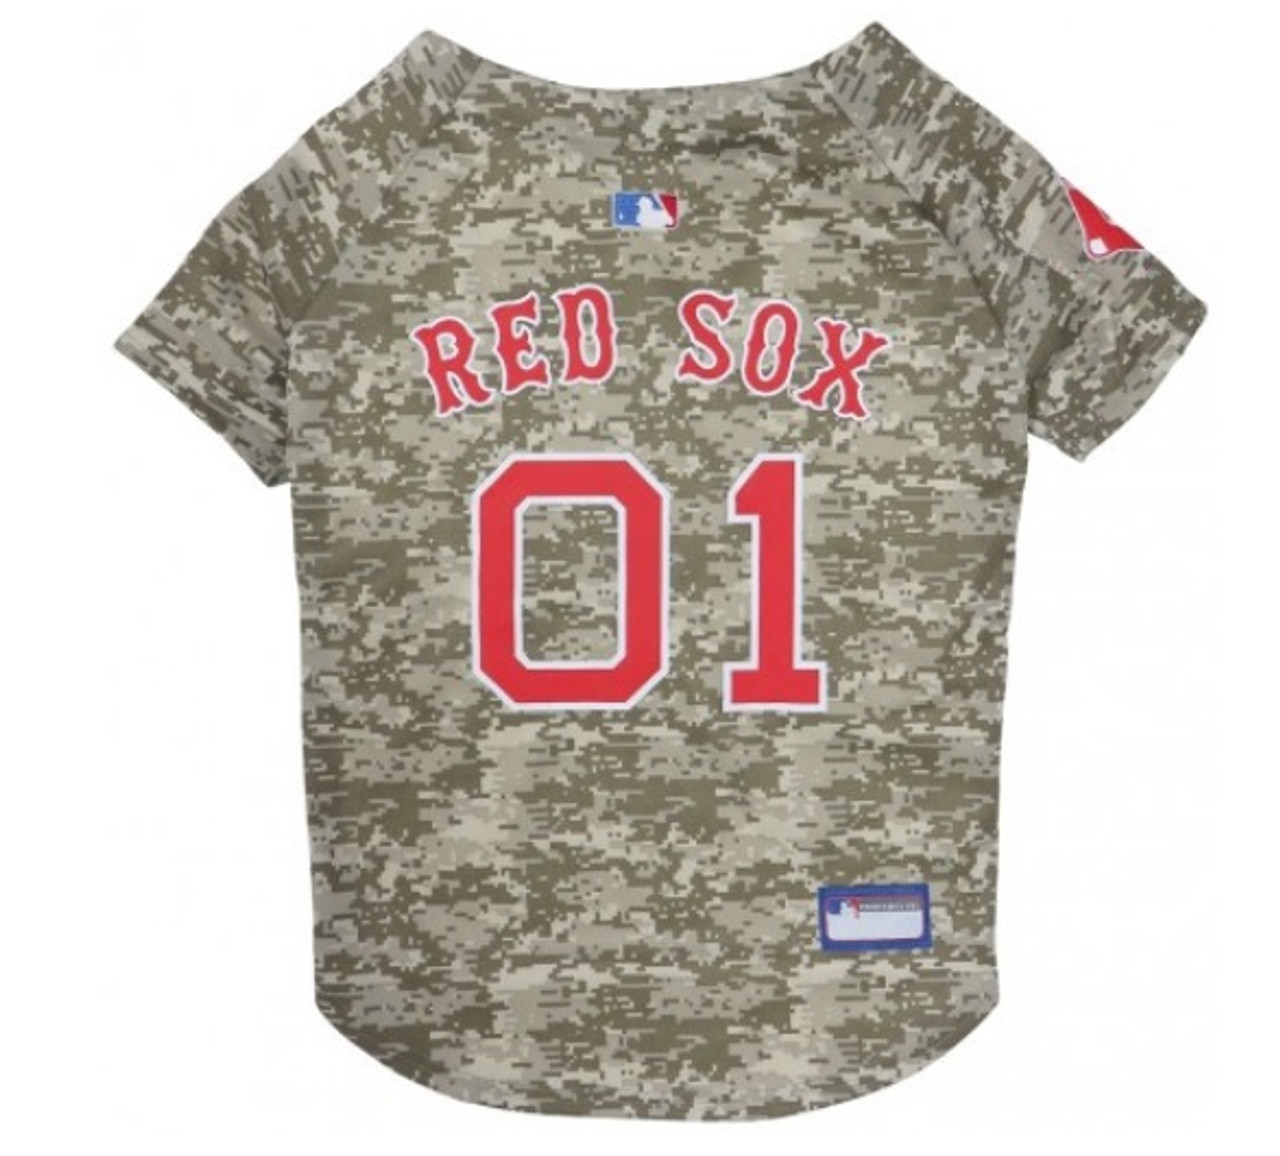 Official Boston Red Sox Jerseys, Red Sox Baseball Jerseys